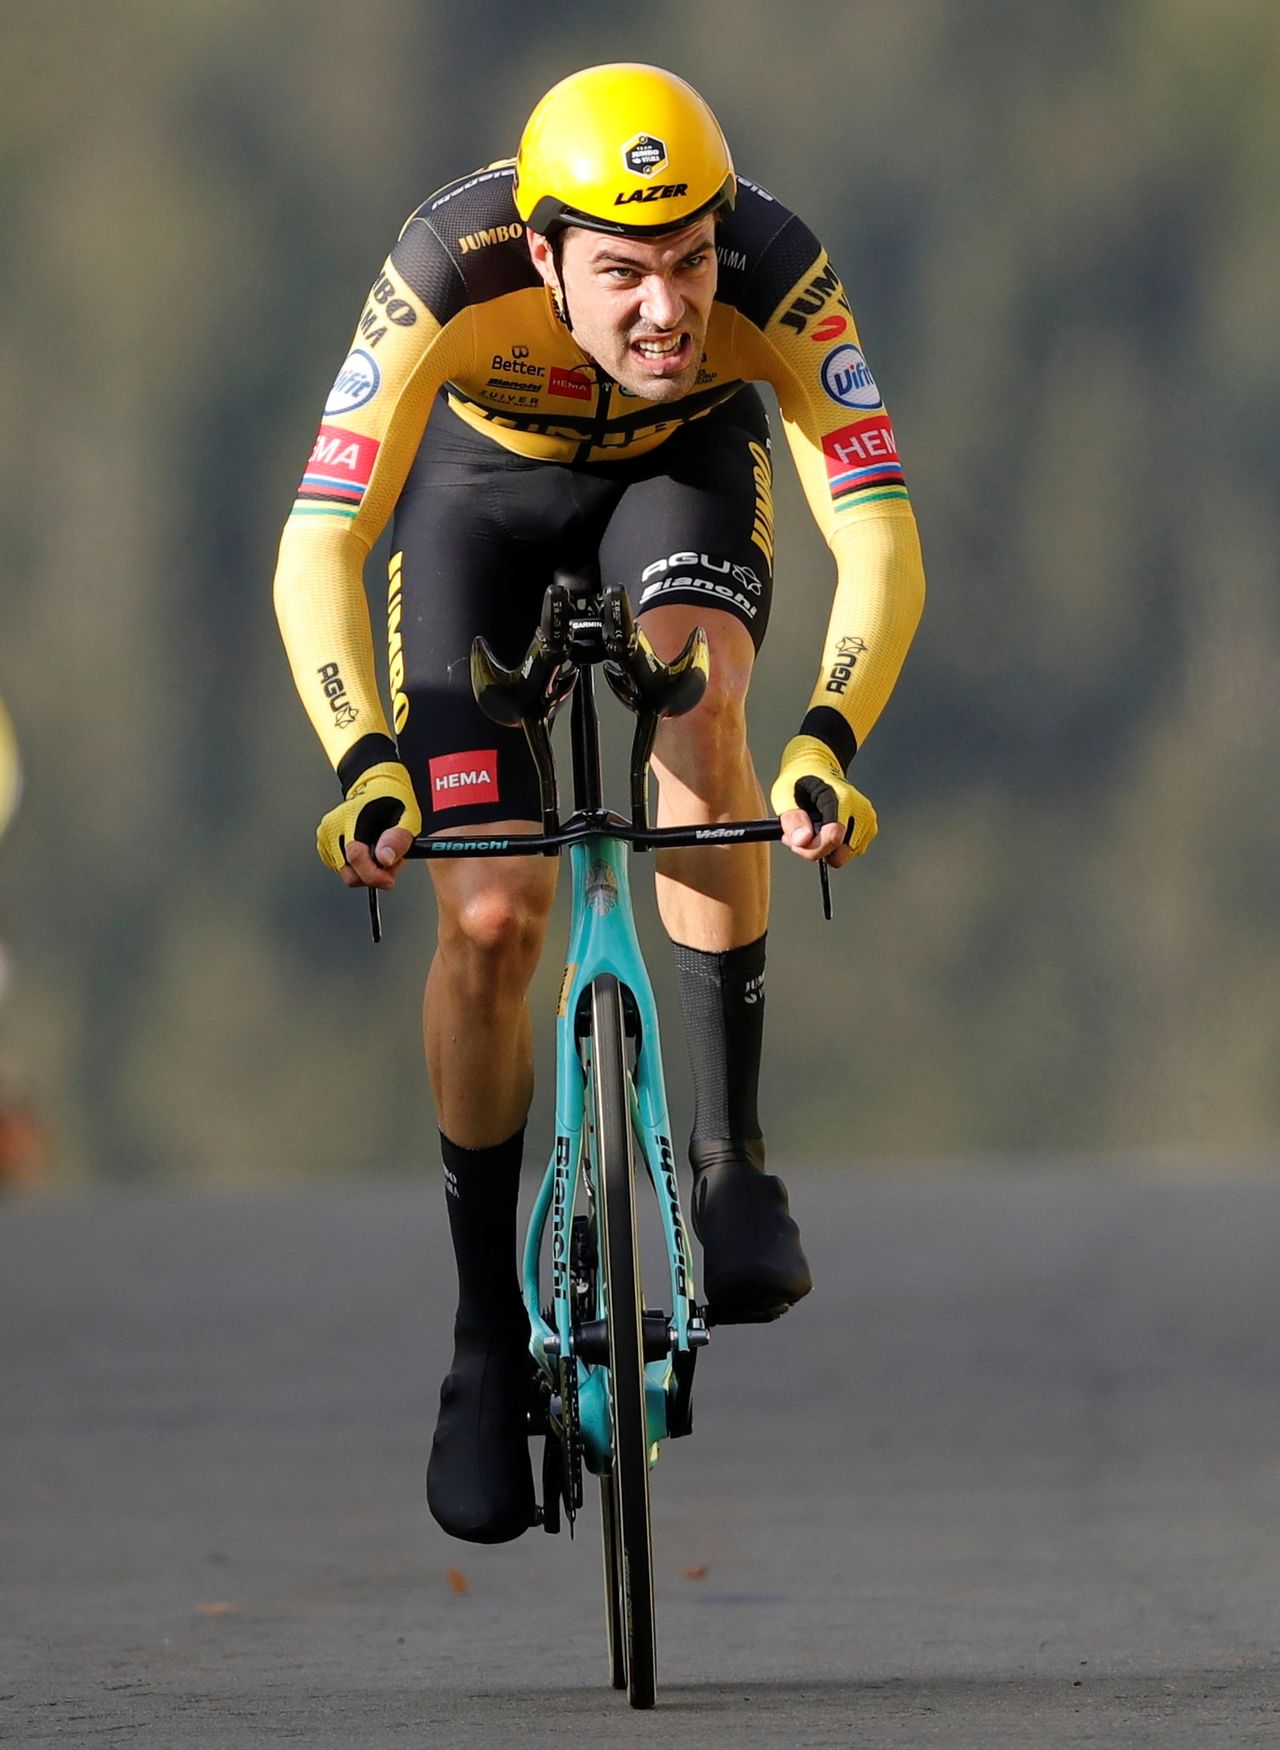 متسابق الدراجات الهولندي توم دومولين ومتسابق فريق جامبو-فيسما  يشارك في سباق فرنسا. صورة من أرشيف رويترز.